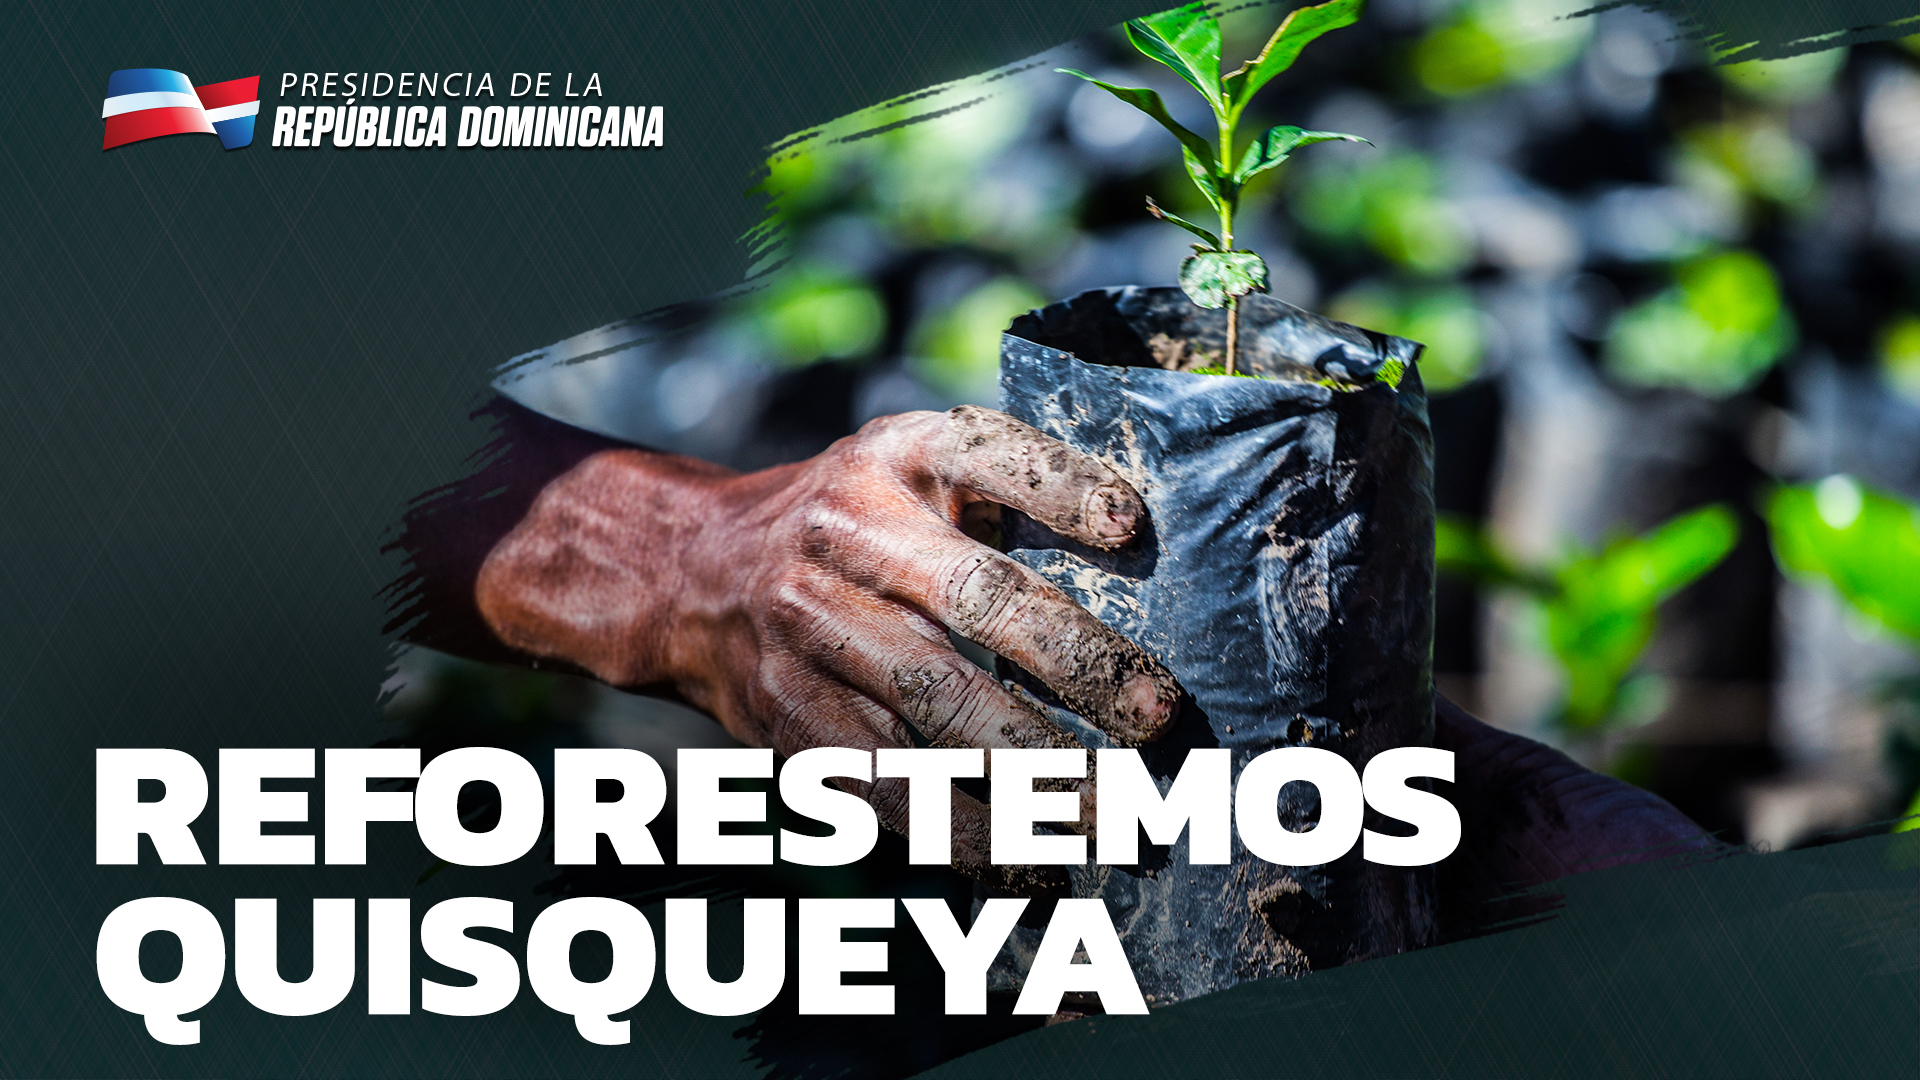 REPÚBLICA DOMINICANA: En República Dominicana, 11 mil productores y sus familias han reforestado 512,737 tareas